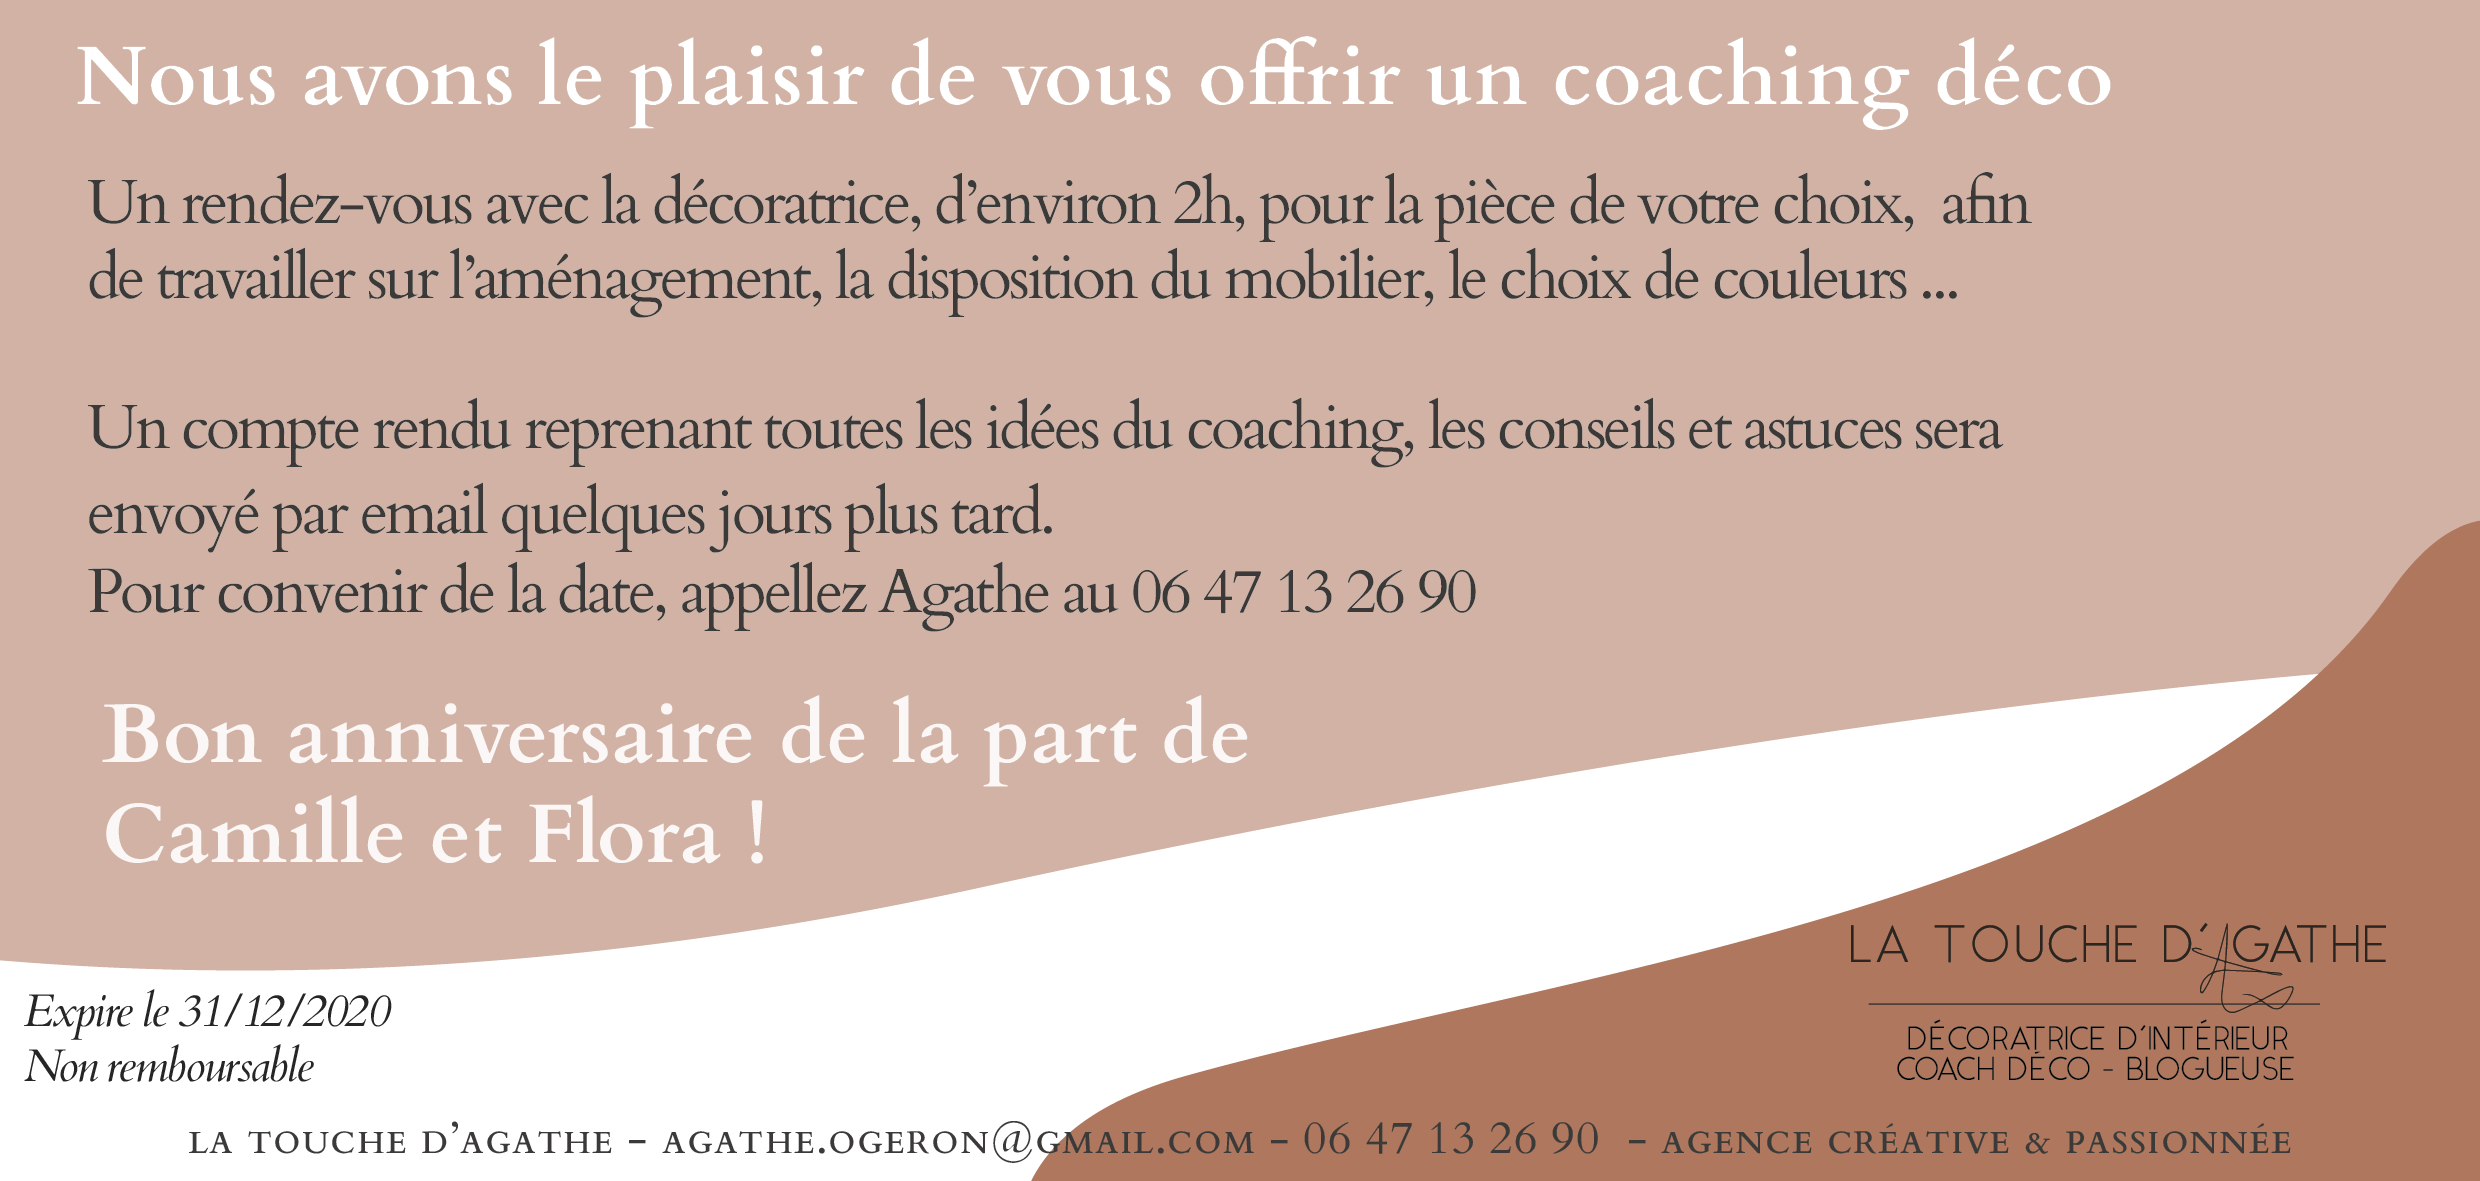 coaching-déco-agathe-ogeron-la-touche-dagathe-décoratrice-archi-poitiers-blog-deco-canapé-salon-amenagement